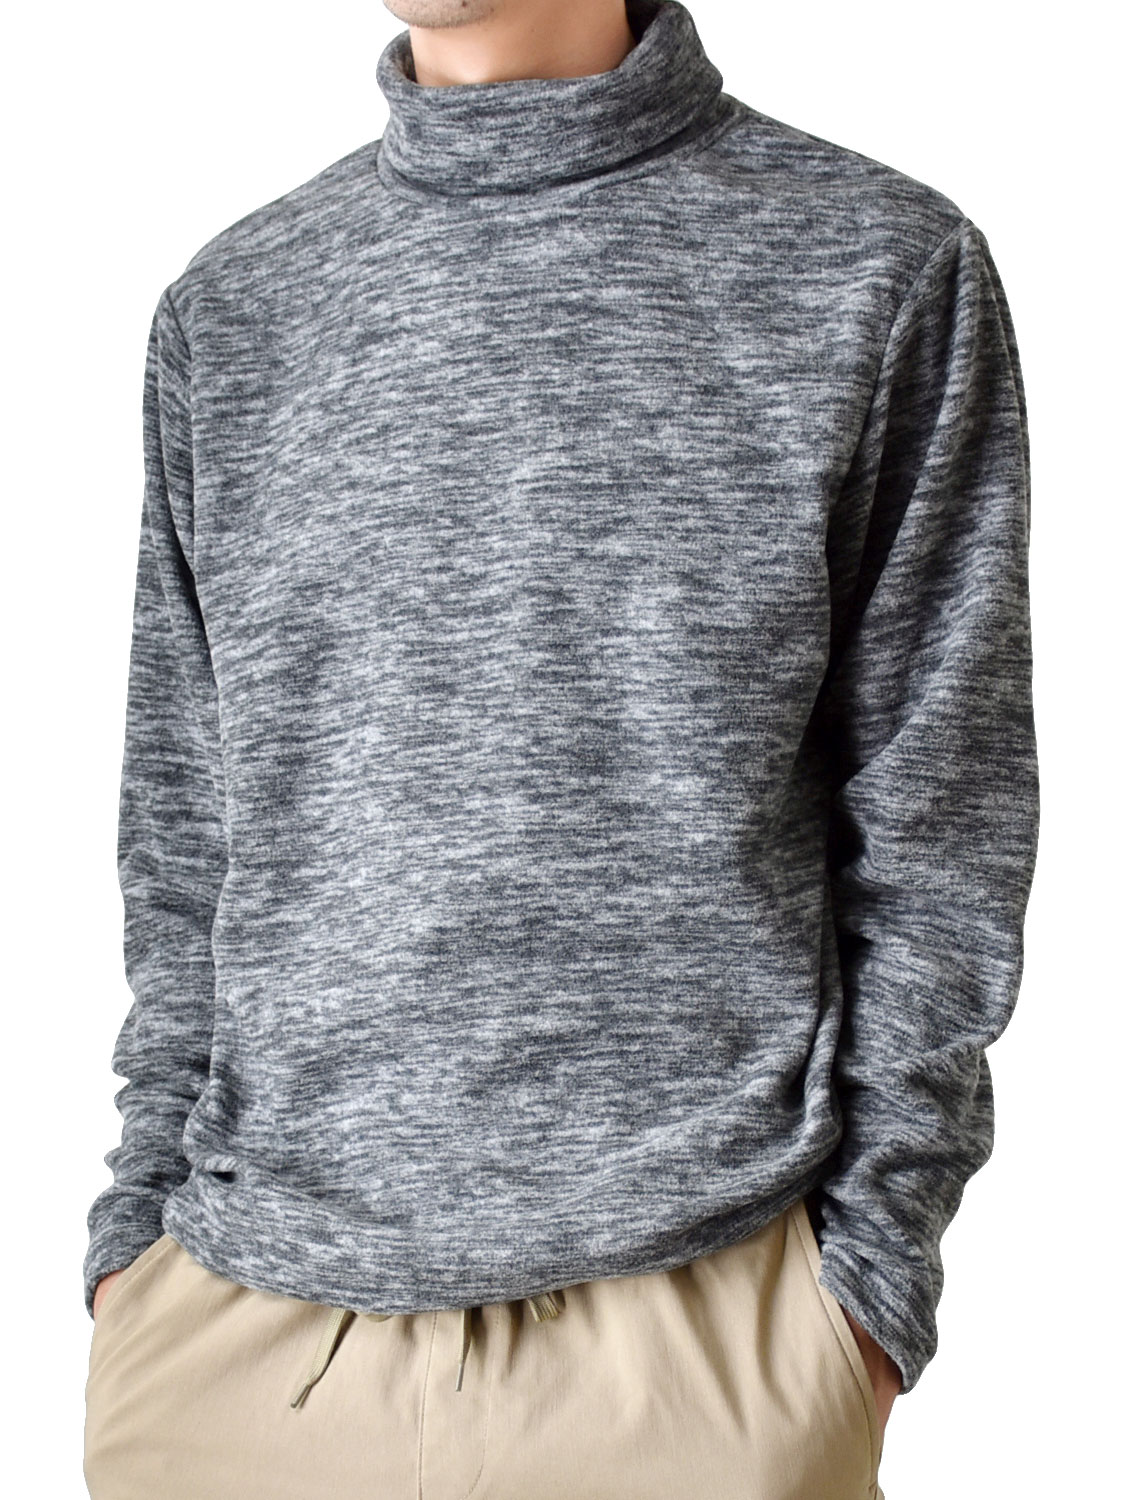 フリース Tシャツ カットソー ロンT メンズ 暖か タートルネック 裏起毛 送料無料 通販YC